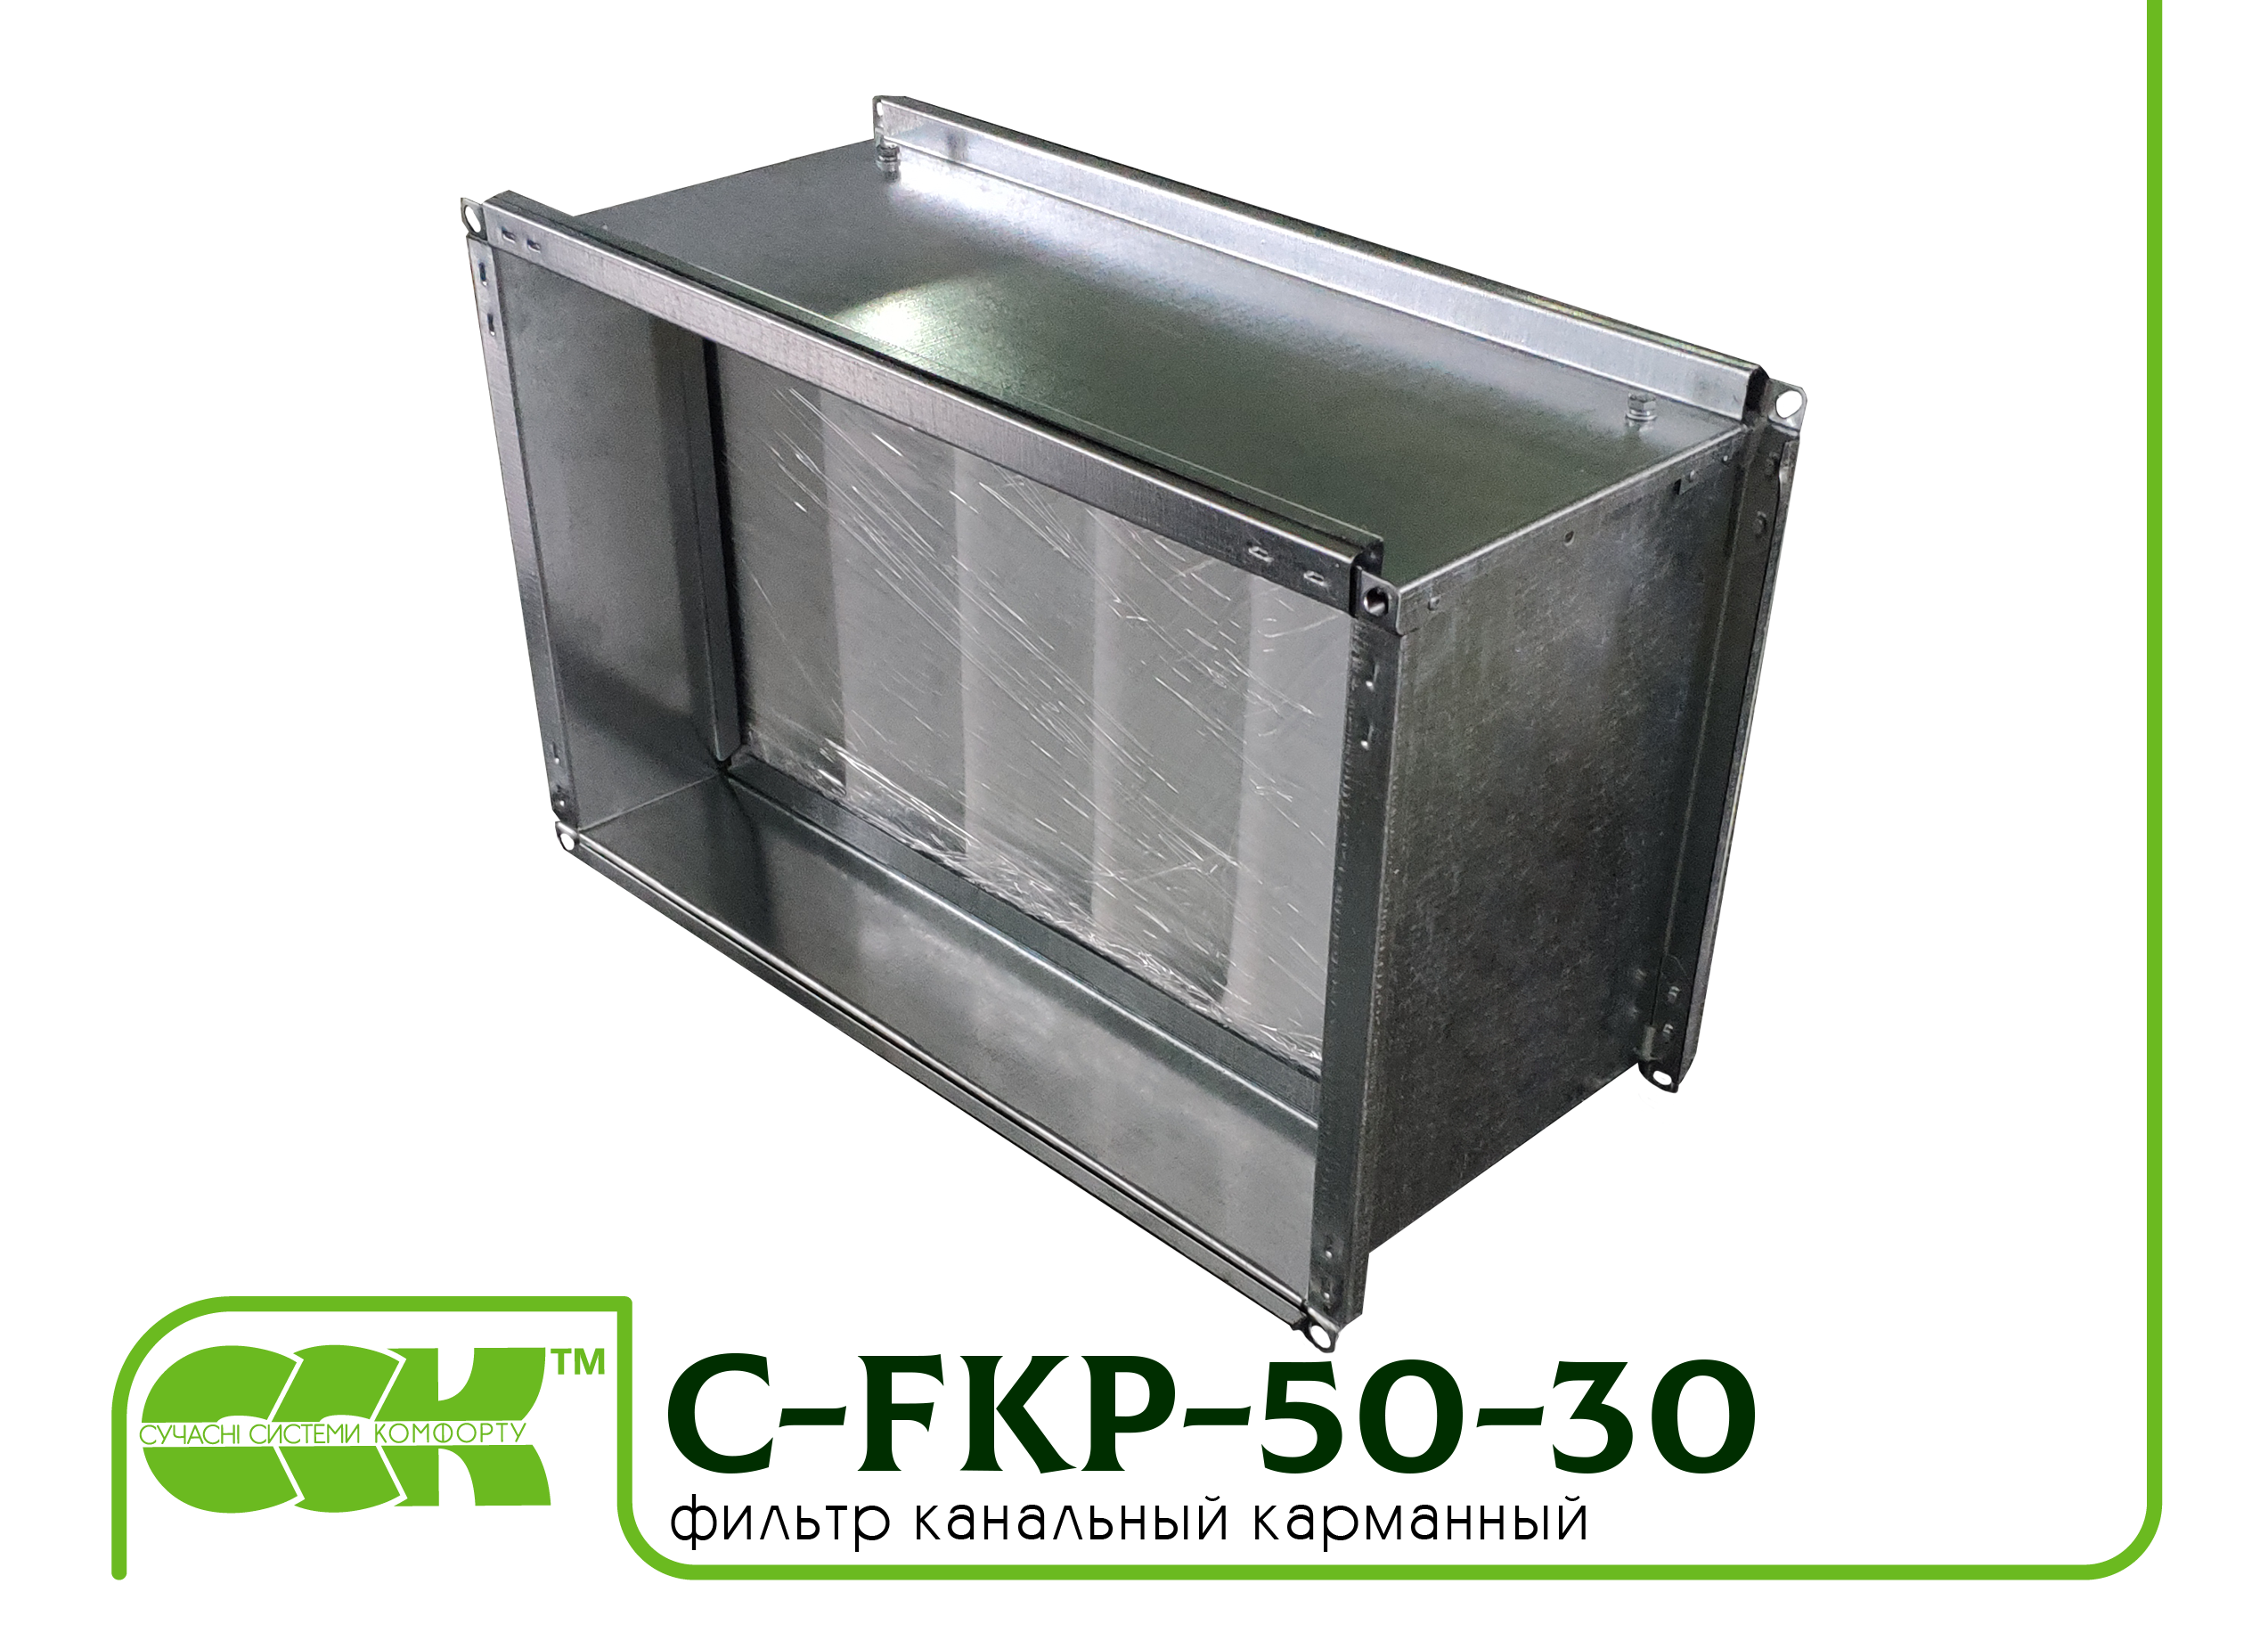 Фильтр канальный прямоугольный C-FKP-50-30-G4-bag